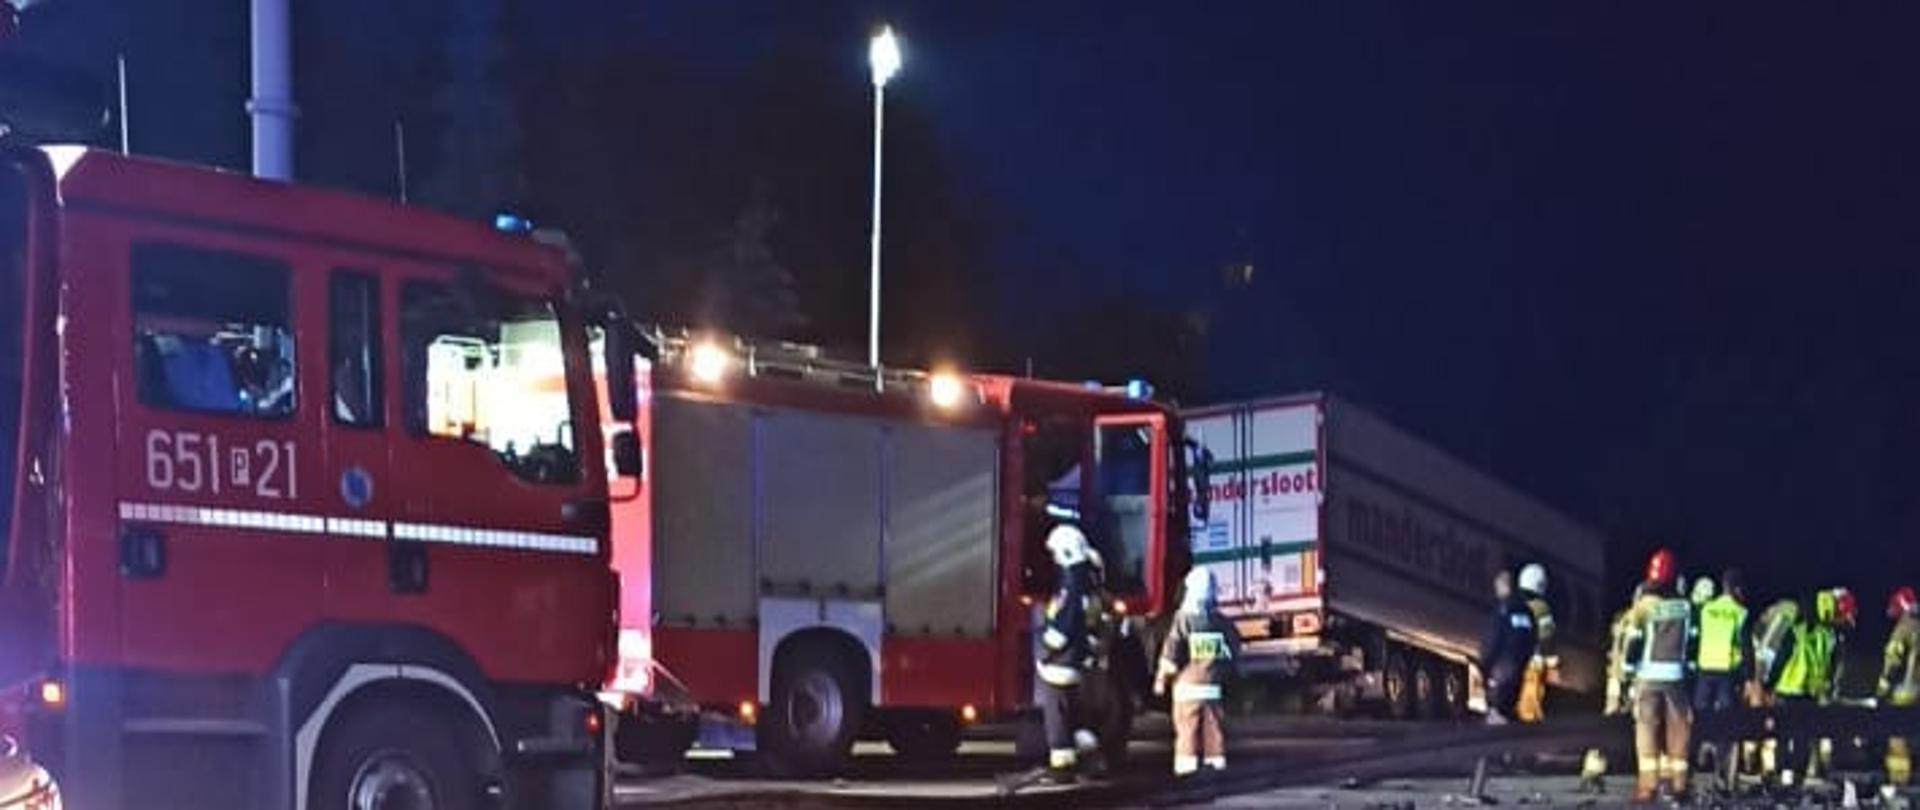 Zdjęcie przedstawia dwa samochody strażackie stojące na skrzyżowaniu. Obok stoi grupka strażaków. Za nimi widać przyczepę samochodu ciężarowego lezącego w rowie